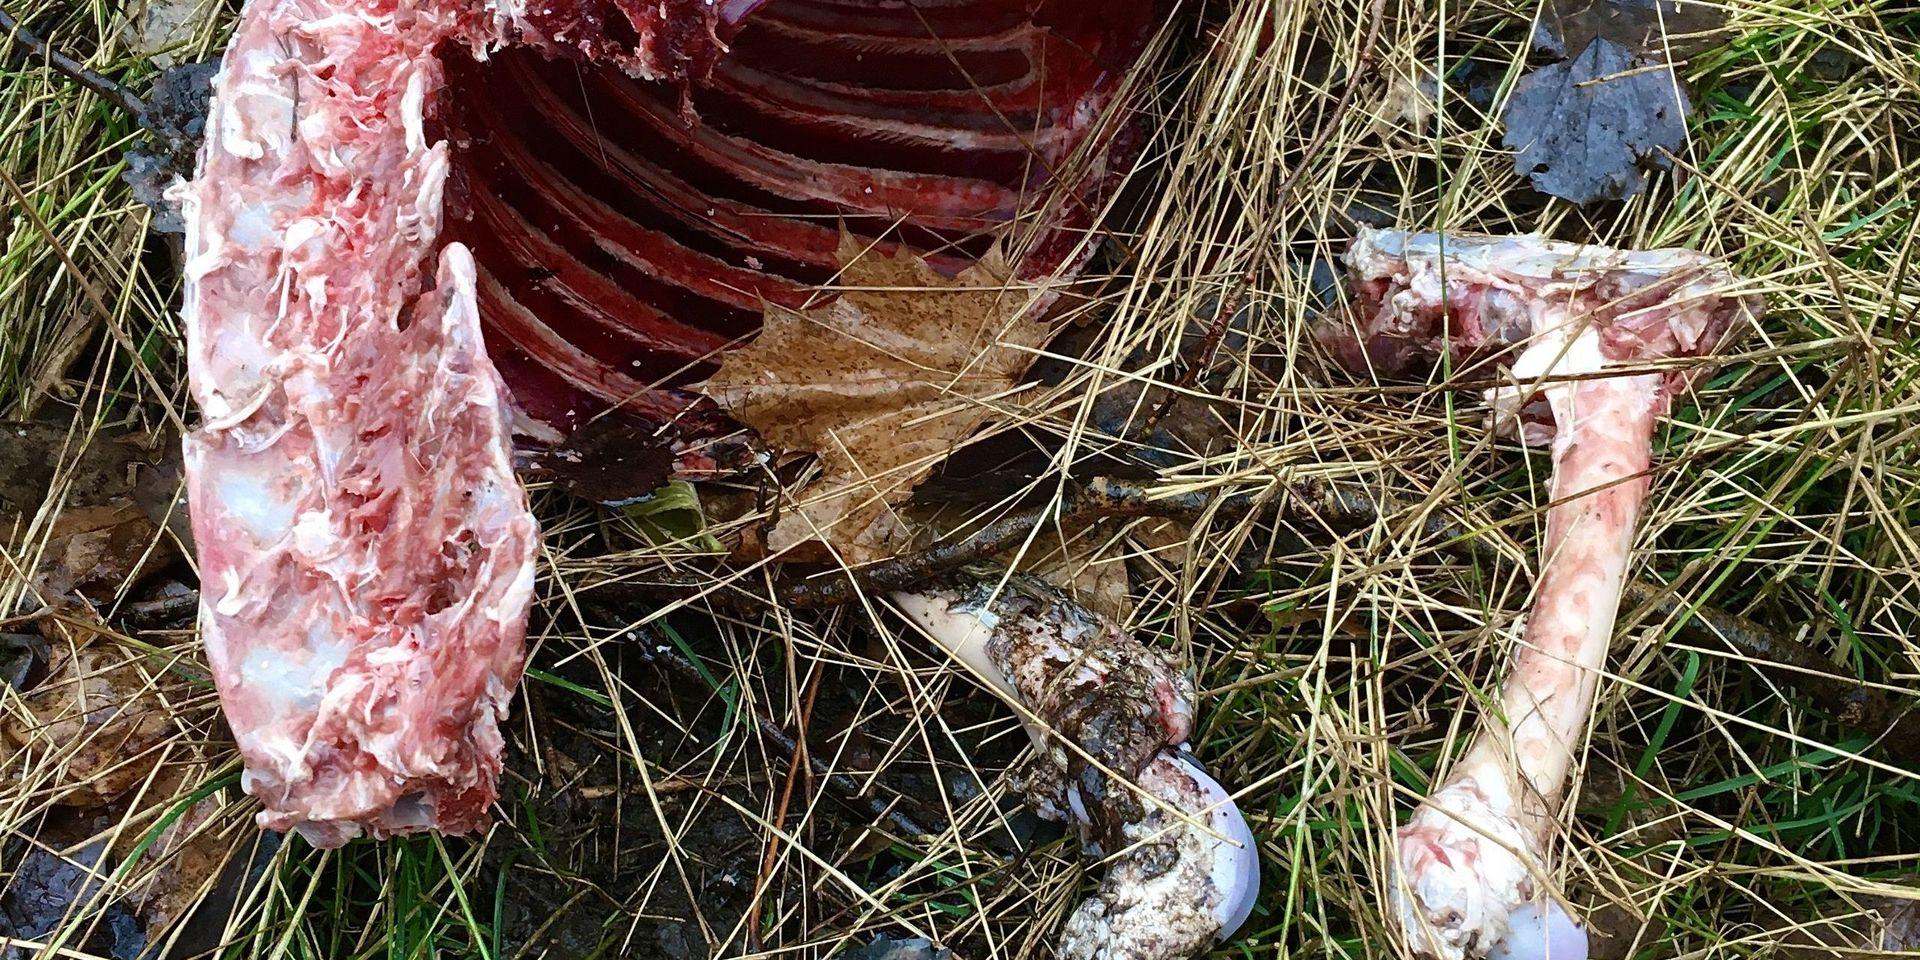 Under fredagen hittade en kvinna rester av ett slaktat djur vid en promenadväg nära Redbergskyrkan.